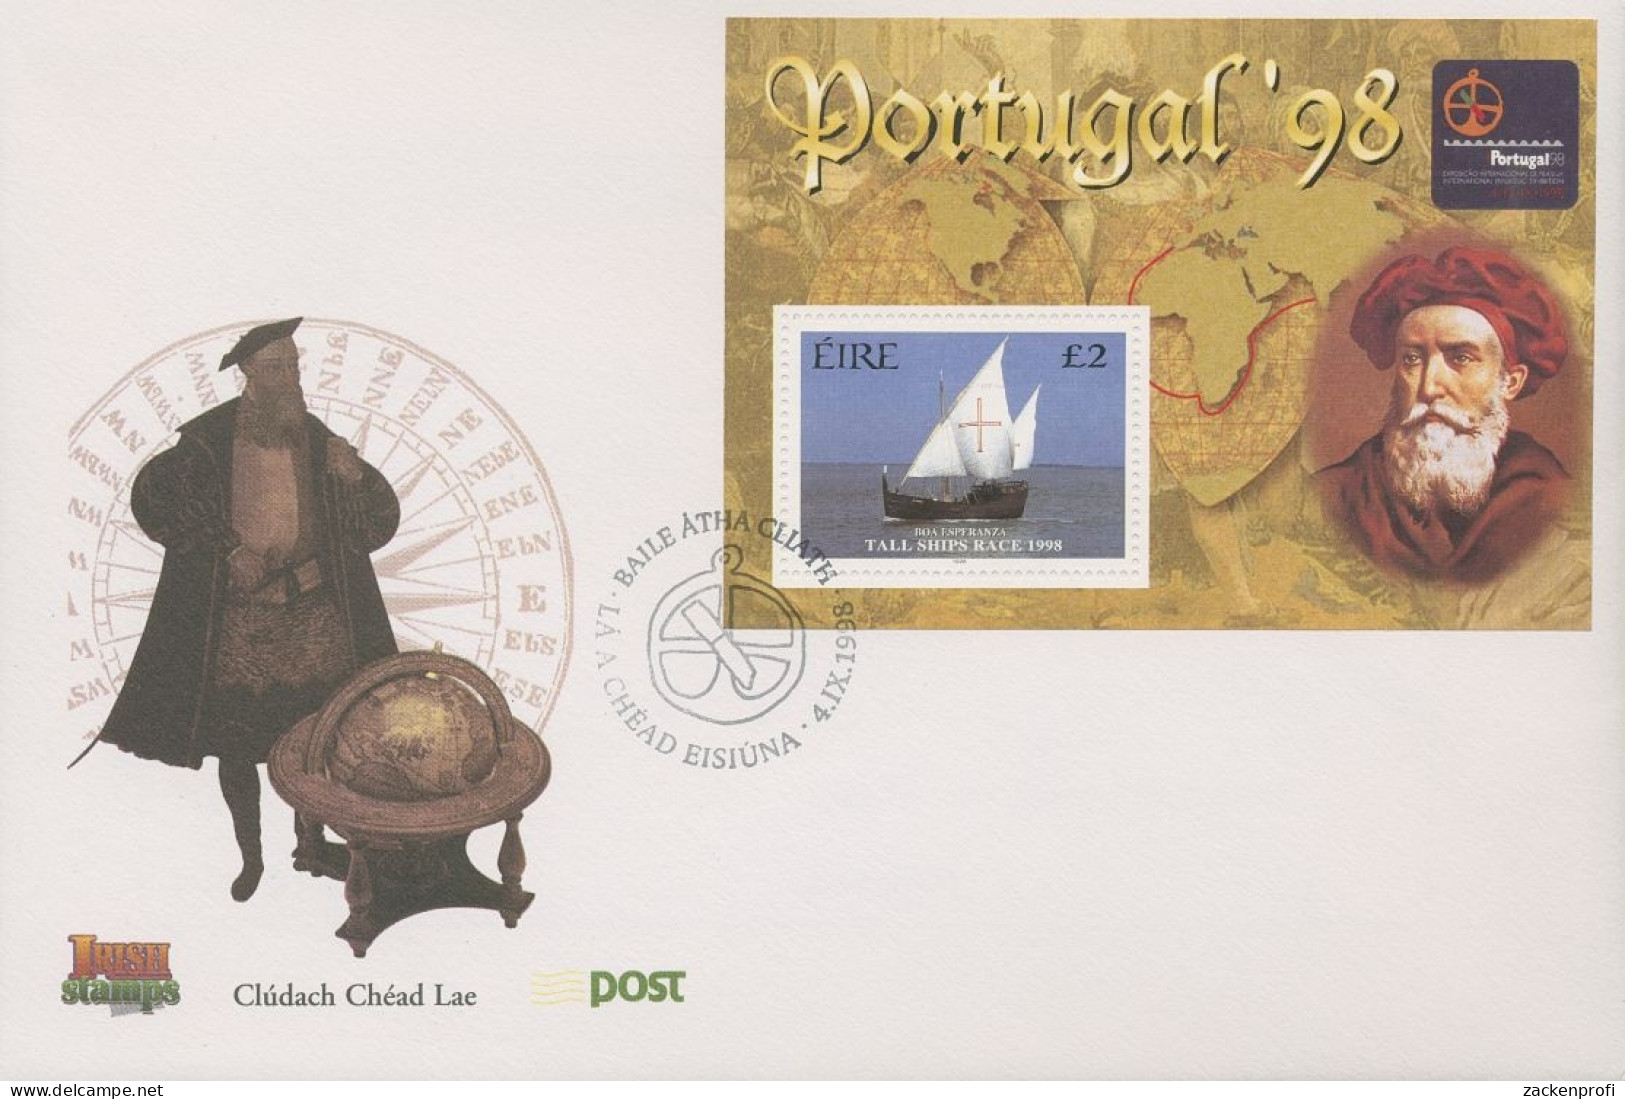 Irland 1998 Briefm.-Ausstellung PORTUGAL '98 Ersttagsbrief Block 28 FDC (X18537) - FDC